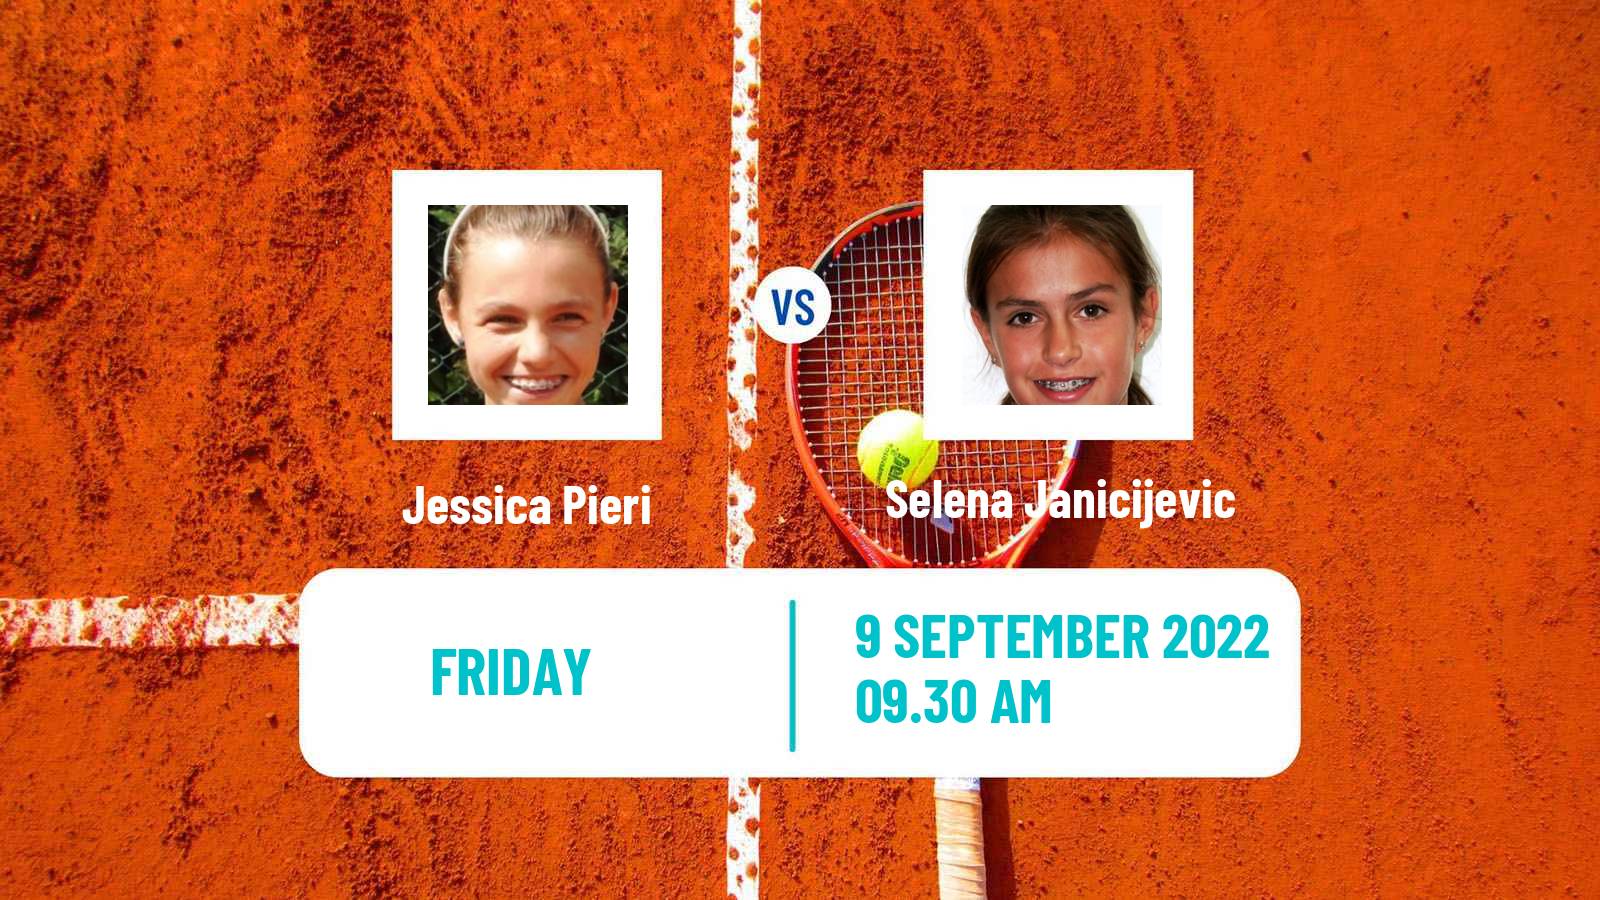 Tennis ITF Tournaments Jessica Pieri - Selena Janicijevic